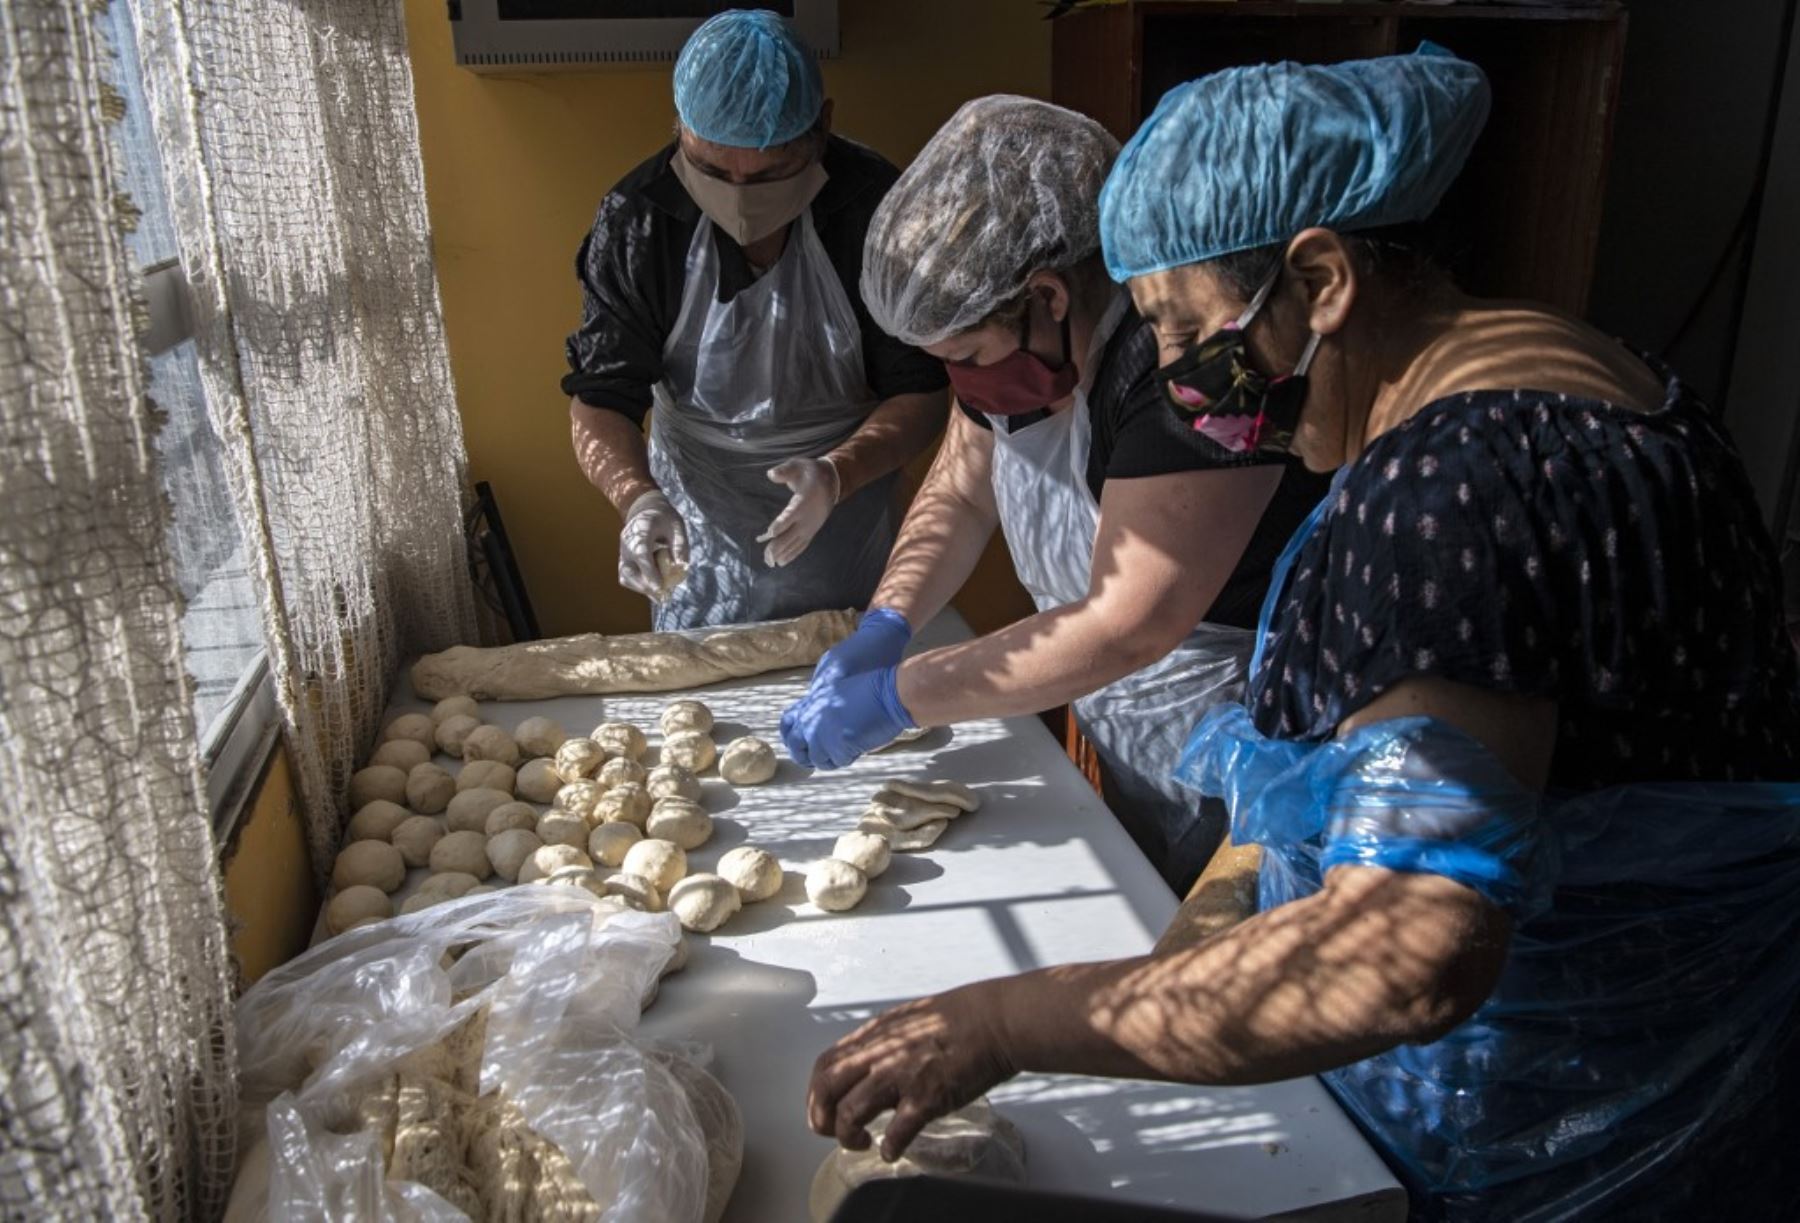 Los voluntarios preparan el almuerzo en un comedor popular en el barrio de La Pintana, Santiago. Foto: AFP